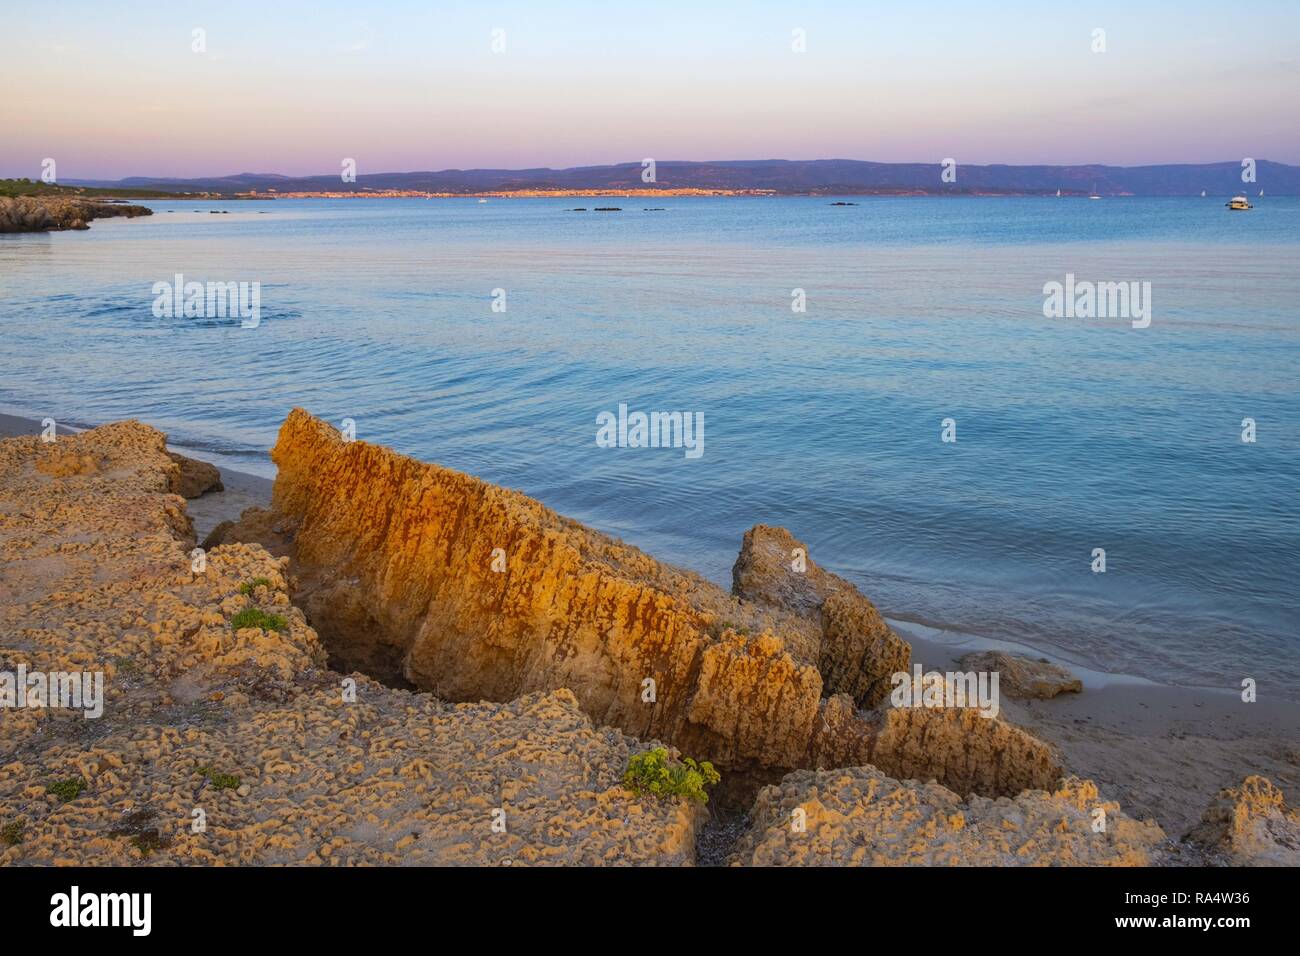 Alghero, Sardinia / Italy - 2018/08/11: Panoramic view of the Spiaggia di Lazzaretto beach at the Gulf of Alghero in the Porto Conte Regional Park Stock Photo